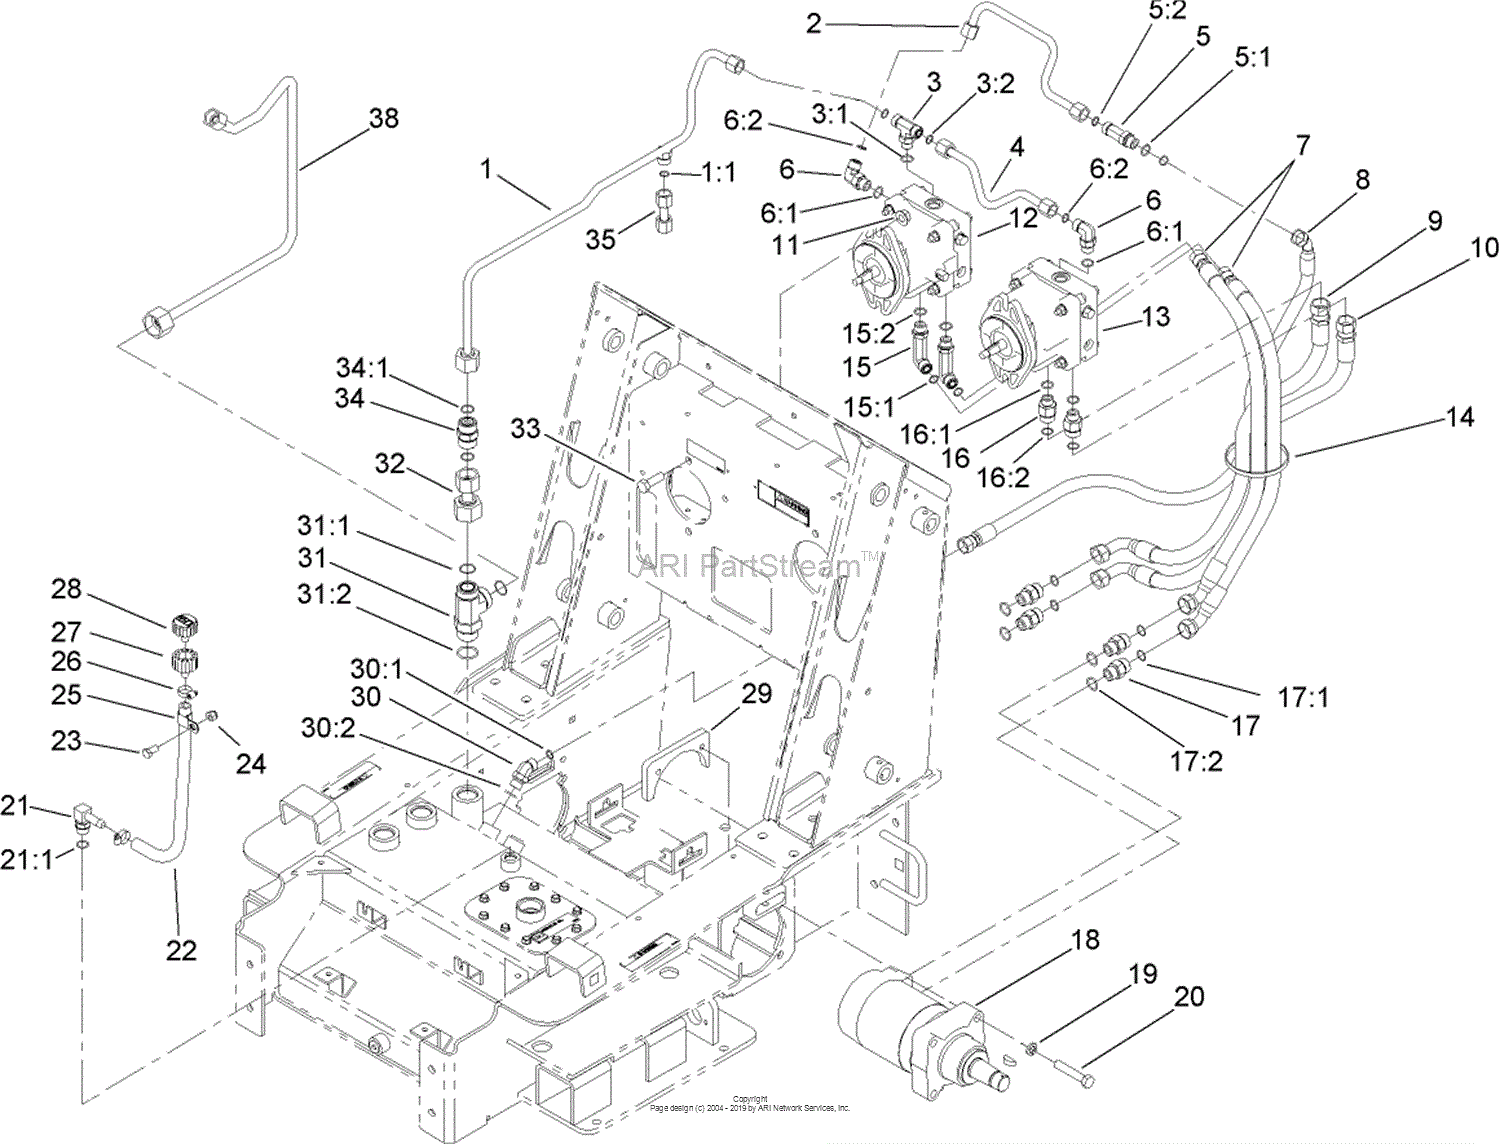 Diagrams Wiring   Toro Dingo Tx425 Parts